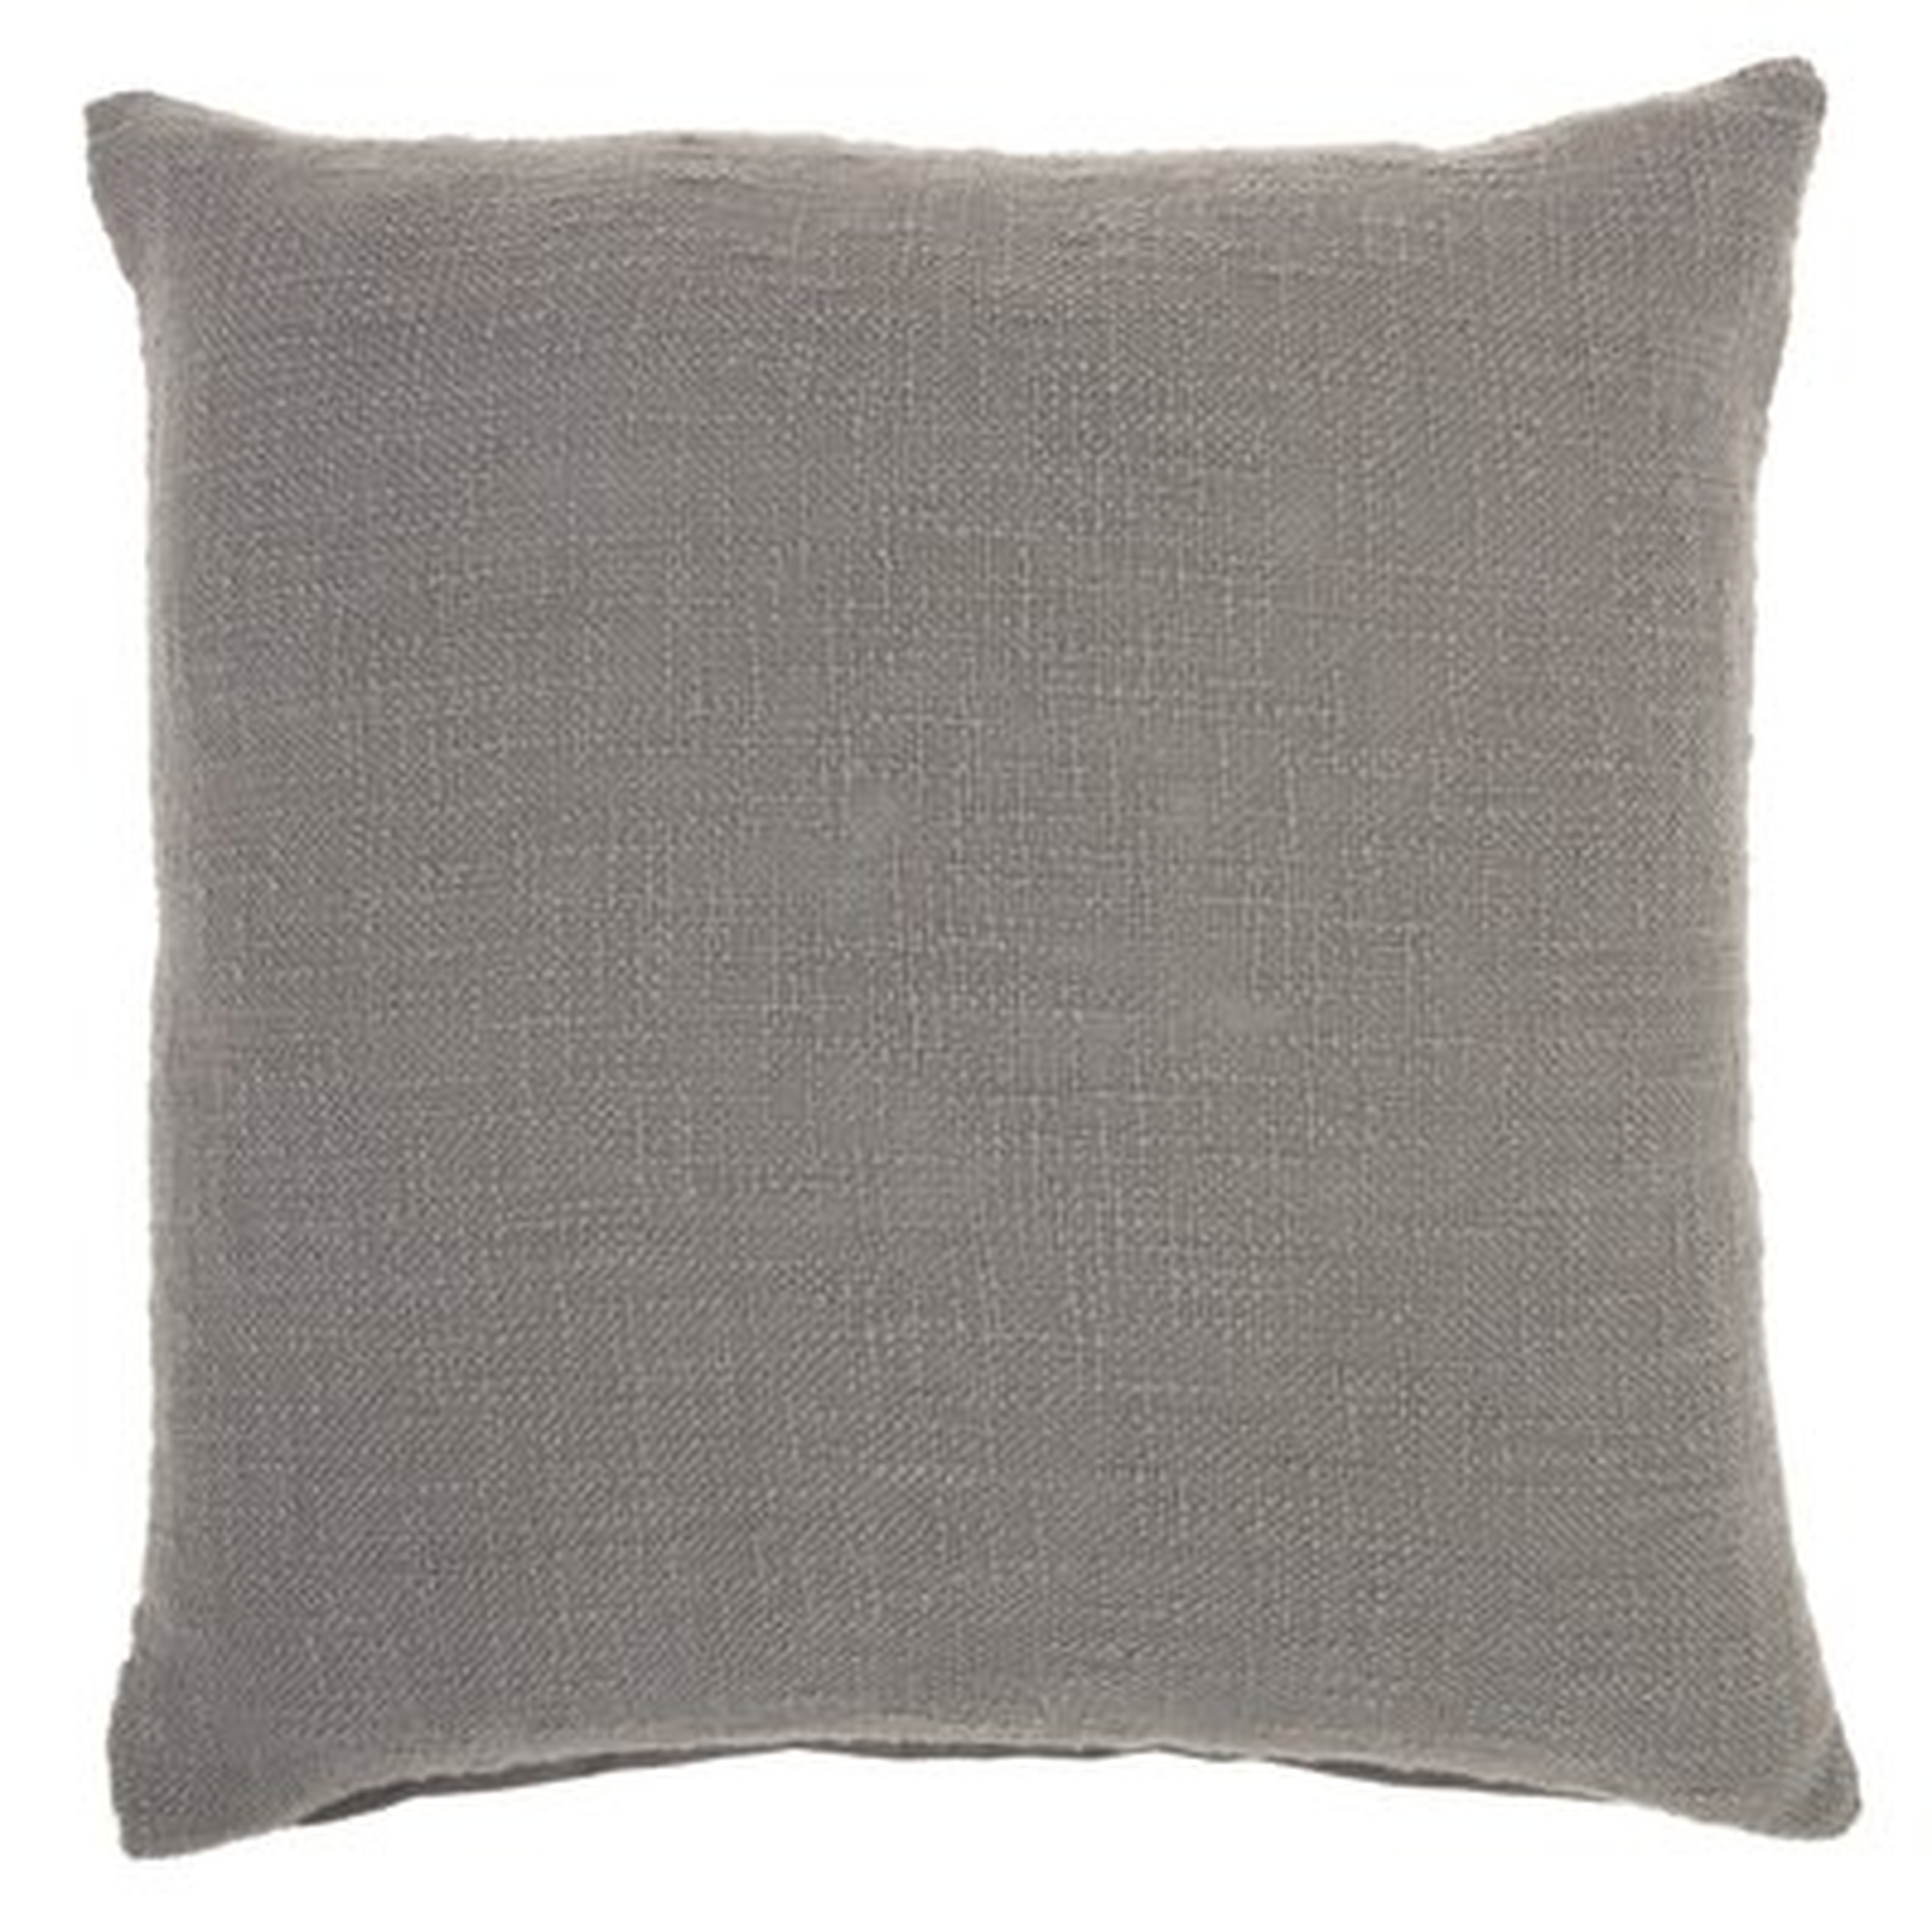 Inari Square Cotton Pillow Cover & Insert - AllModern